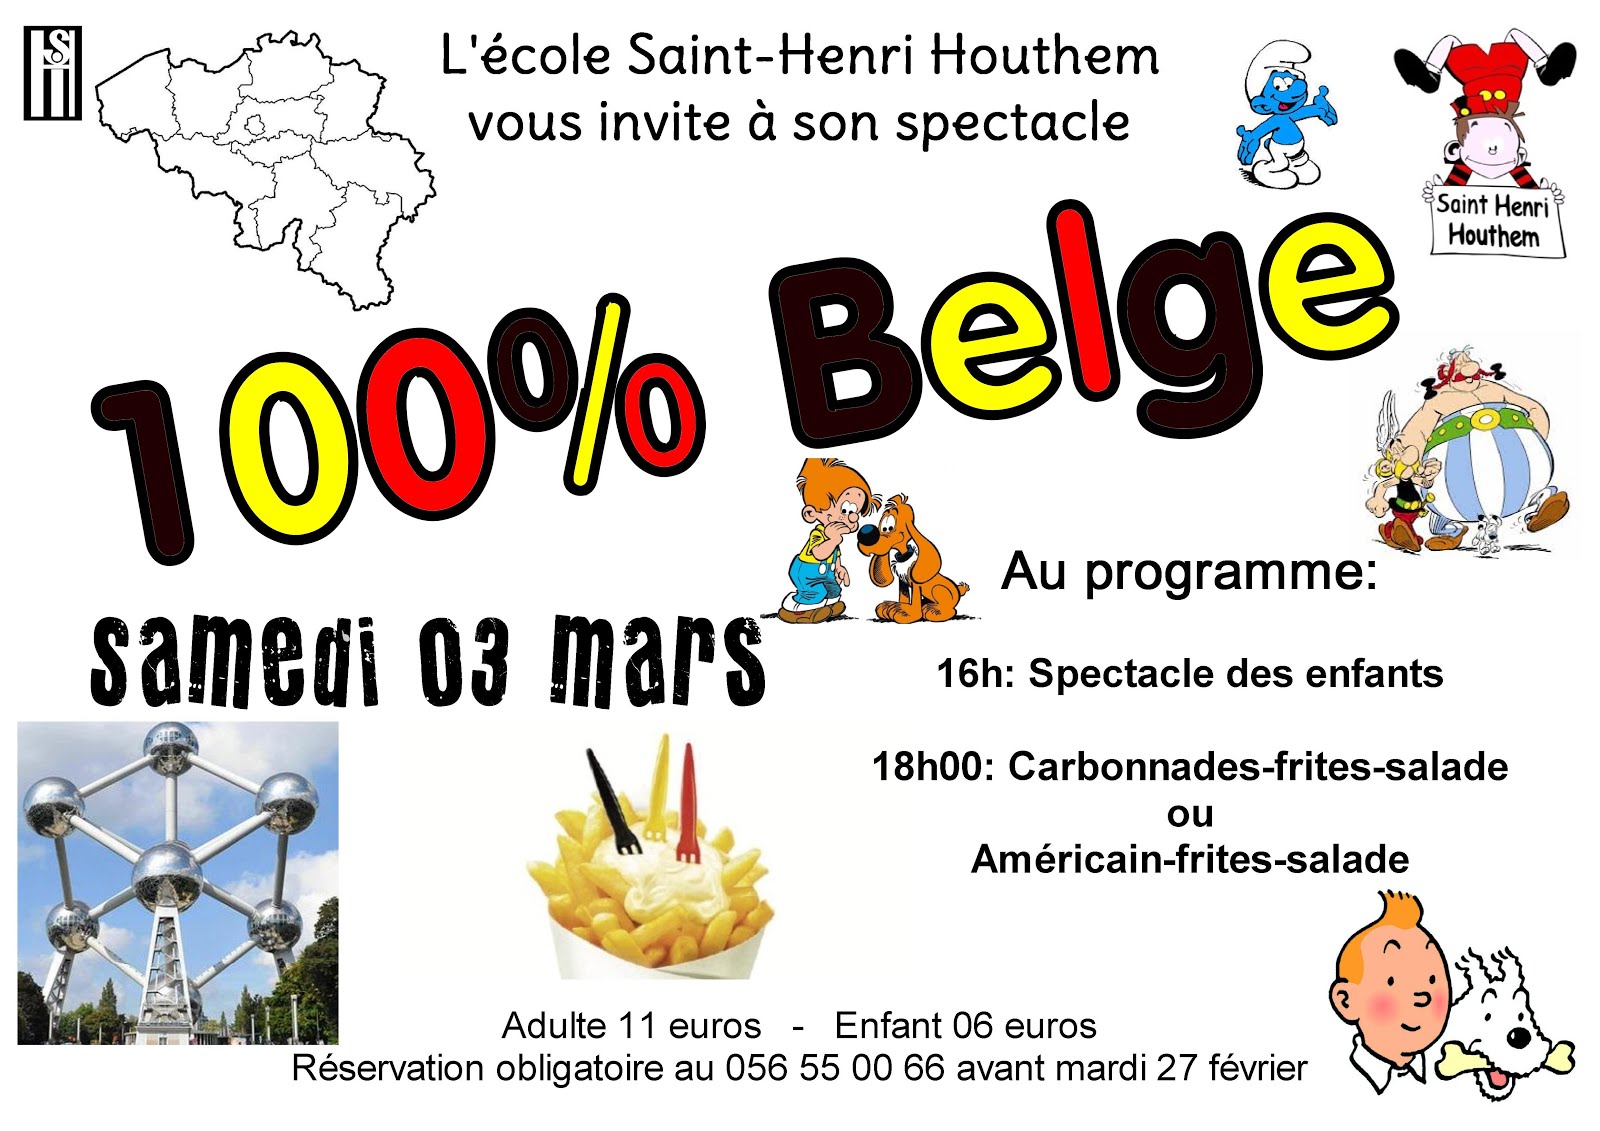 3 mars Saint Henri Houthem